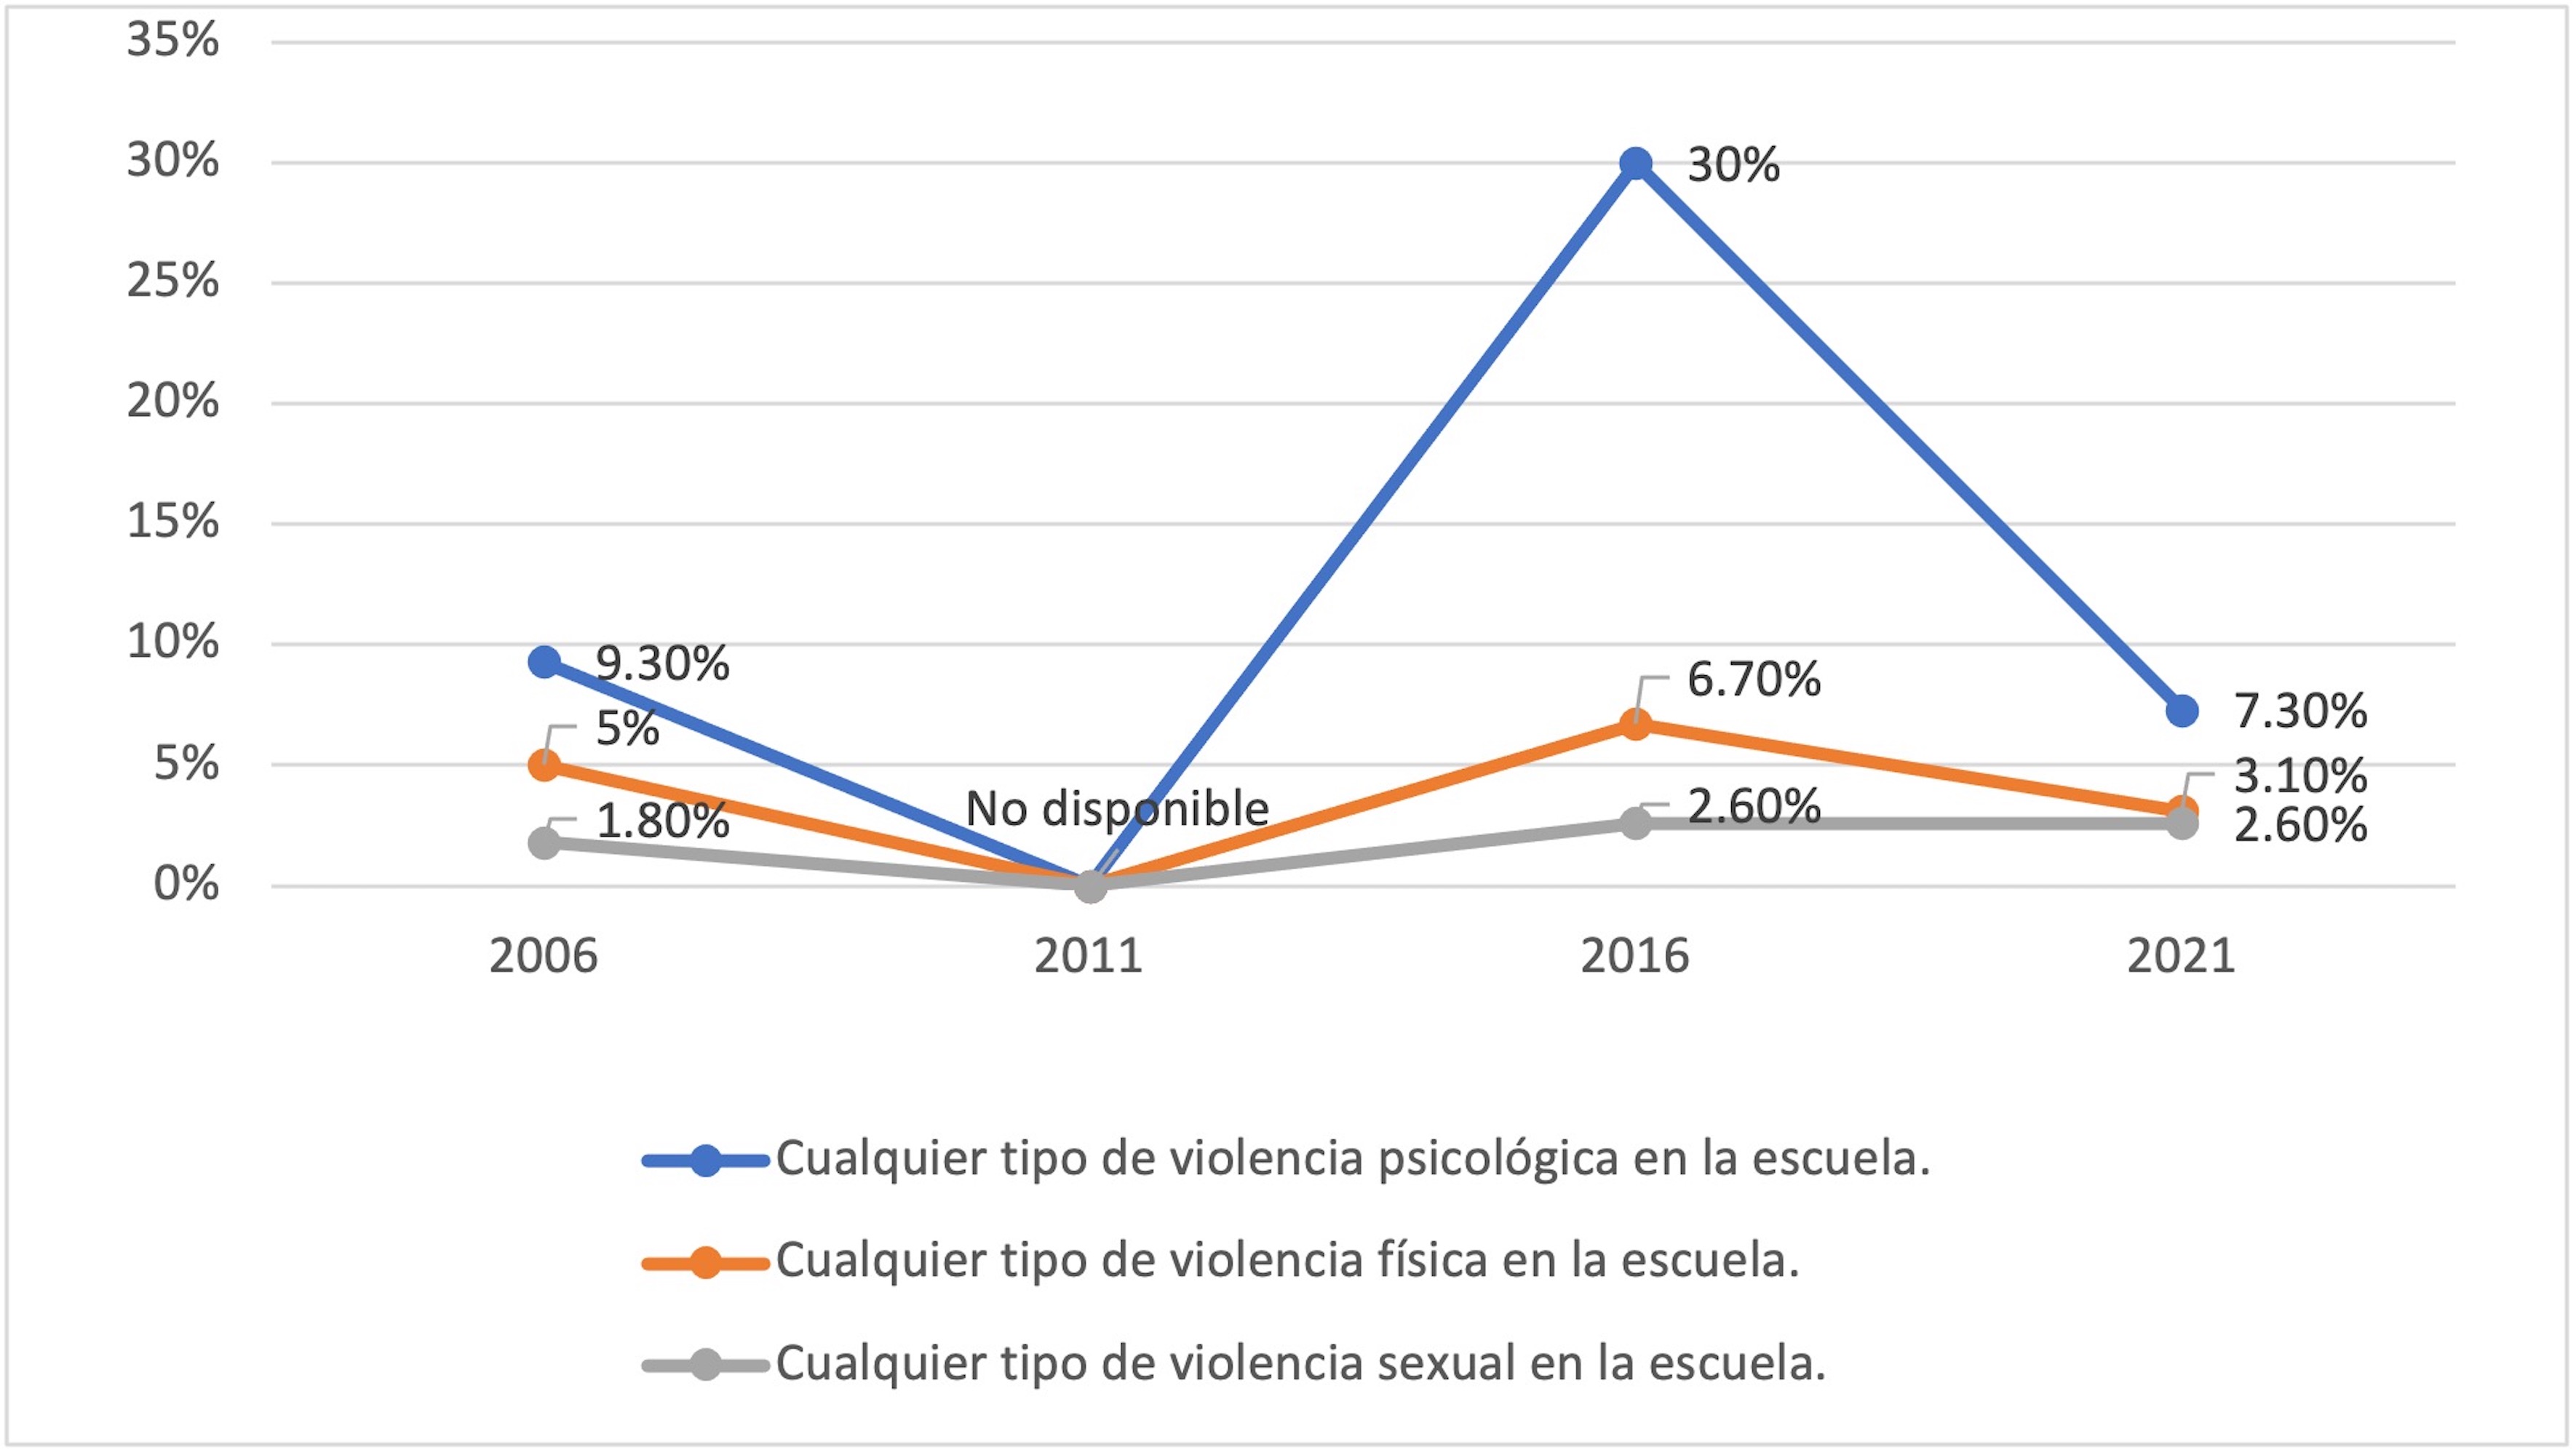 Prevalencia de
violencia reciente en el ámbito escolar en las mujeres de Chihuahua 2006-2021 

 